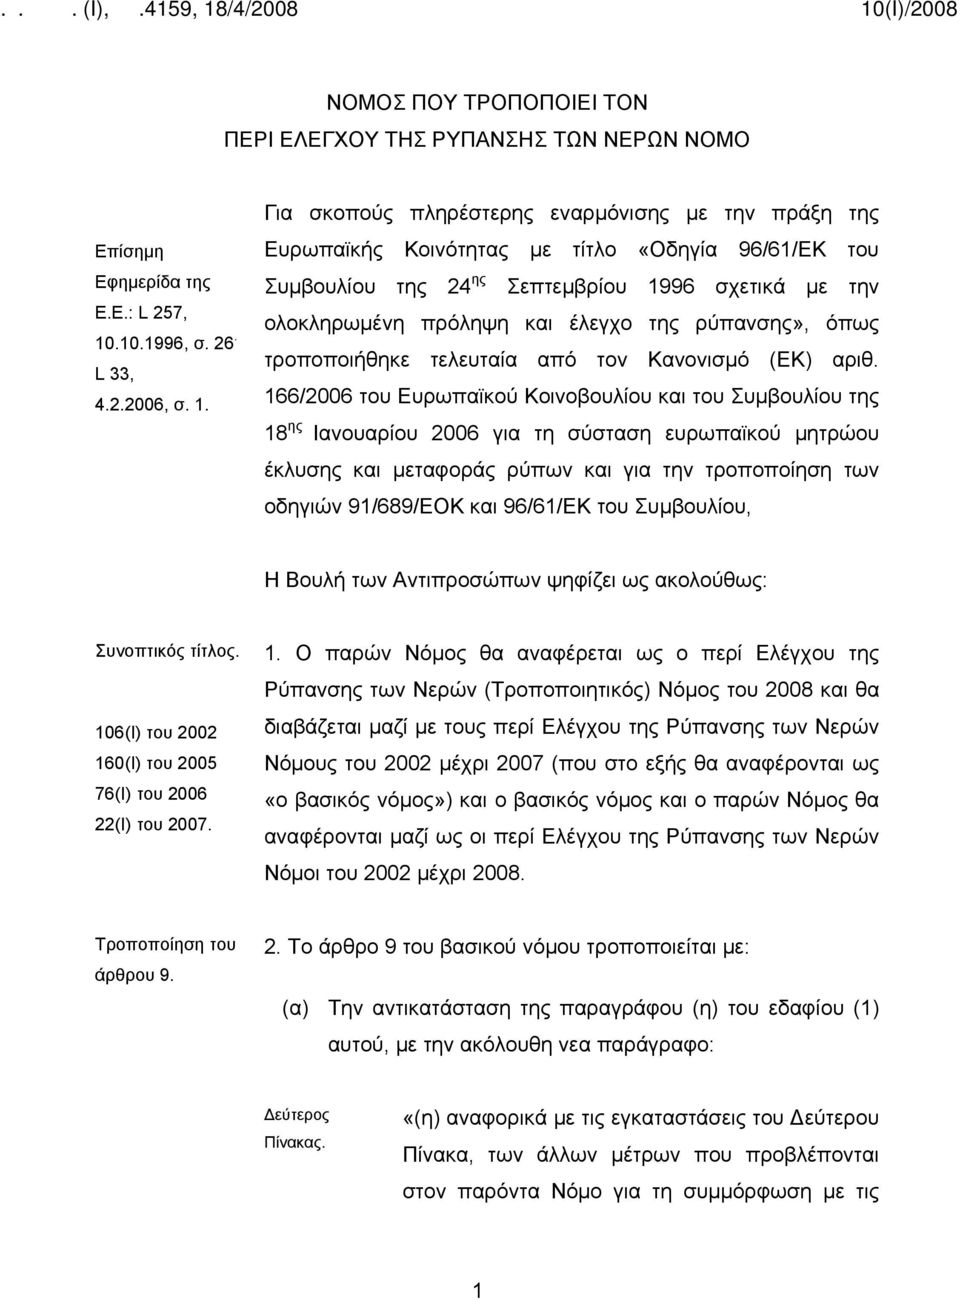 Για σκοπούς πληρέστερης εναρμόνισης με την πράξη της Ευρωπαϊκής Κοινότητας με τίτλο «Οδηγία 96/61/ΕΚ του Συμβουλίου της 24 ης Σεπτεμβρίου 1996 σχετικά με την ολοκληρωμένη πρόληψη και έλεγχο της